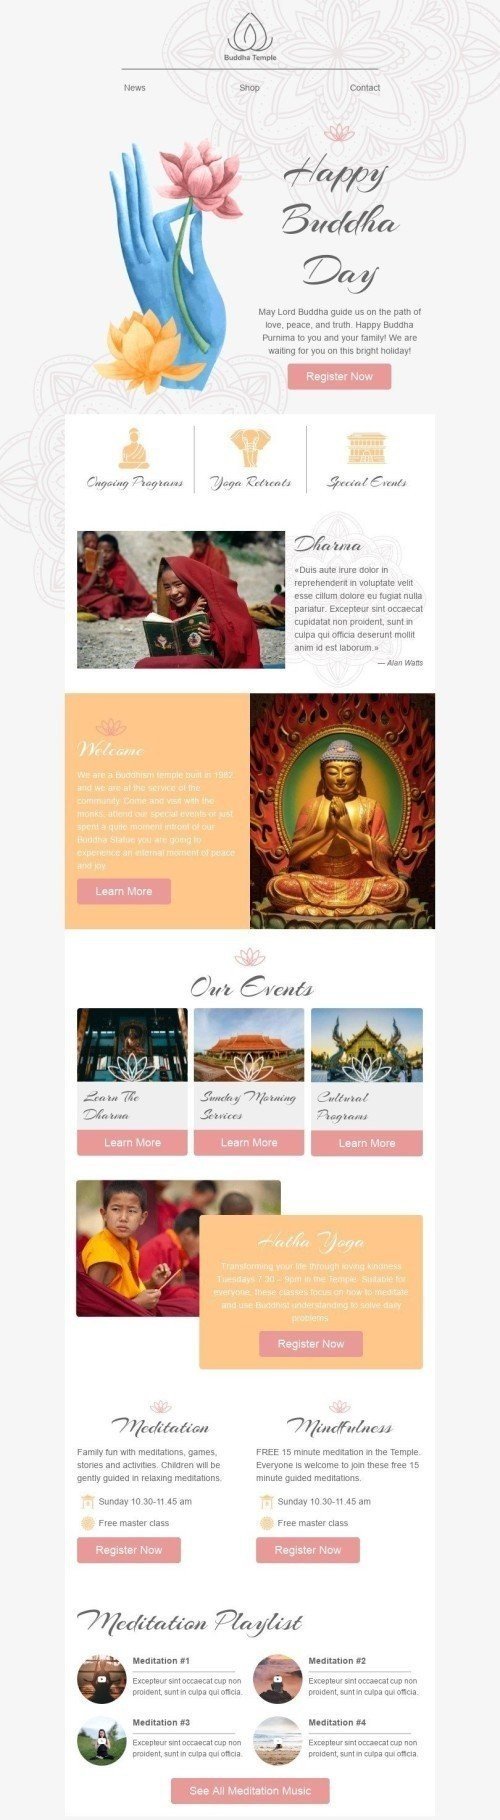 Шаблон письма к празднику День будды «Медитация» для индустрии «Дизайн шаблонов для некоммерческих email-кампаний» дектопный вид